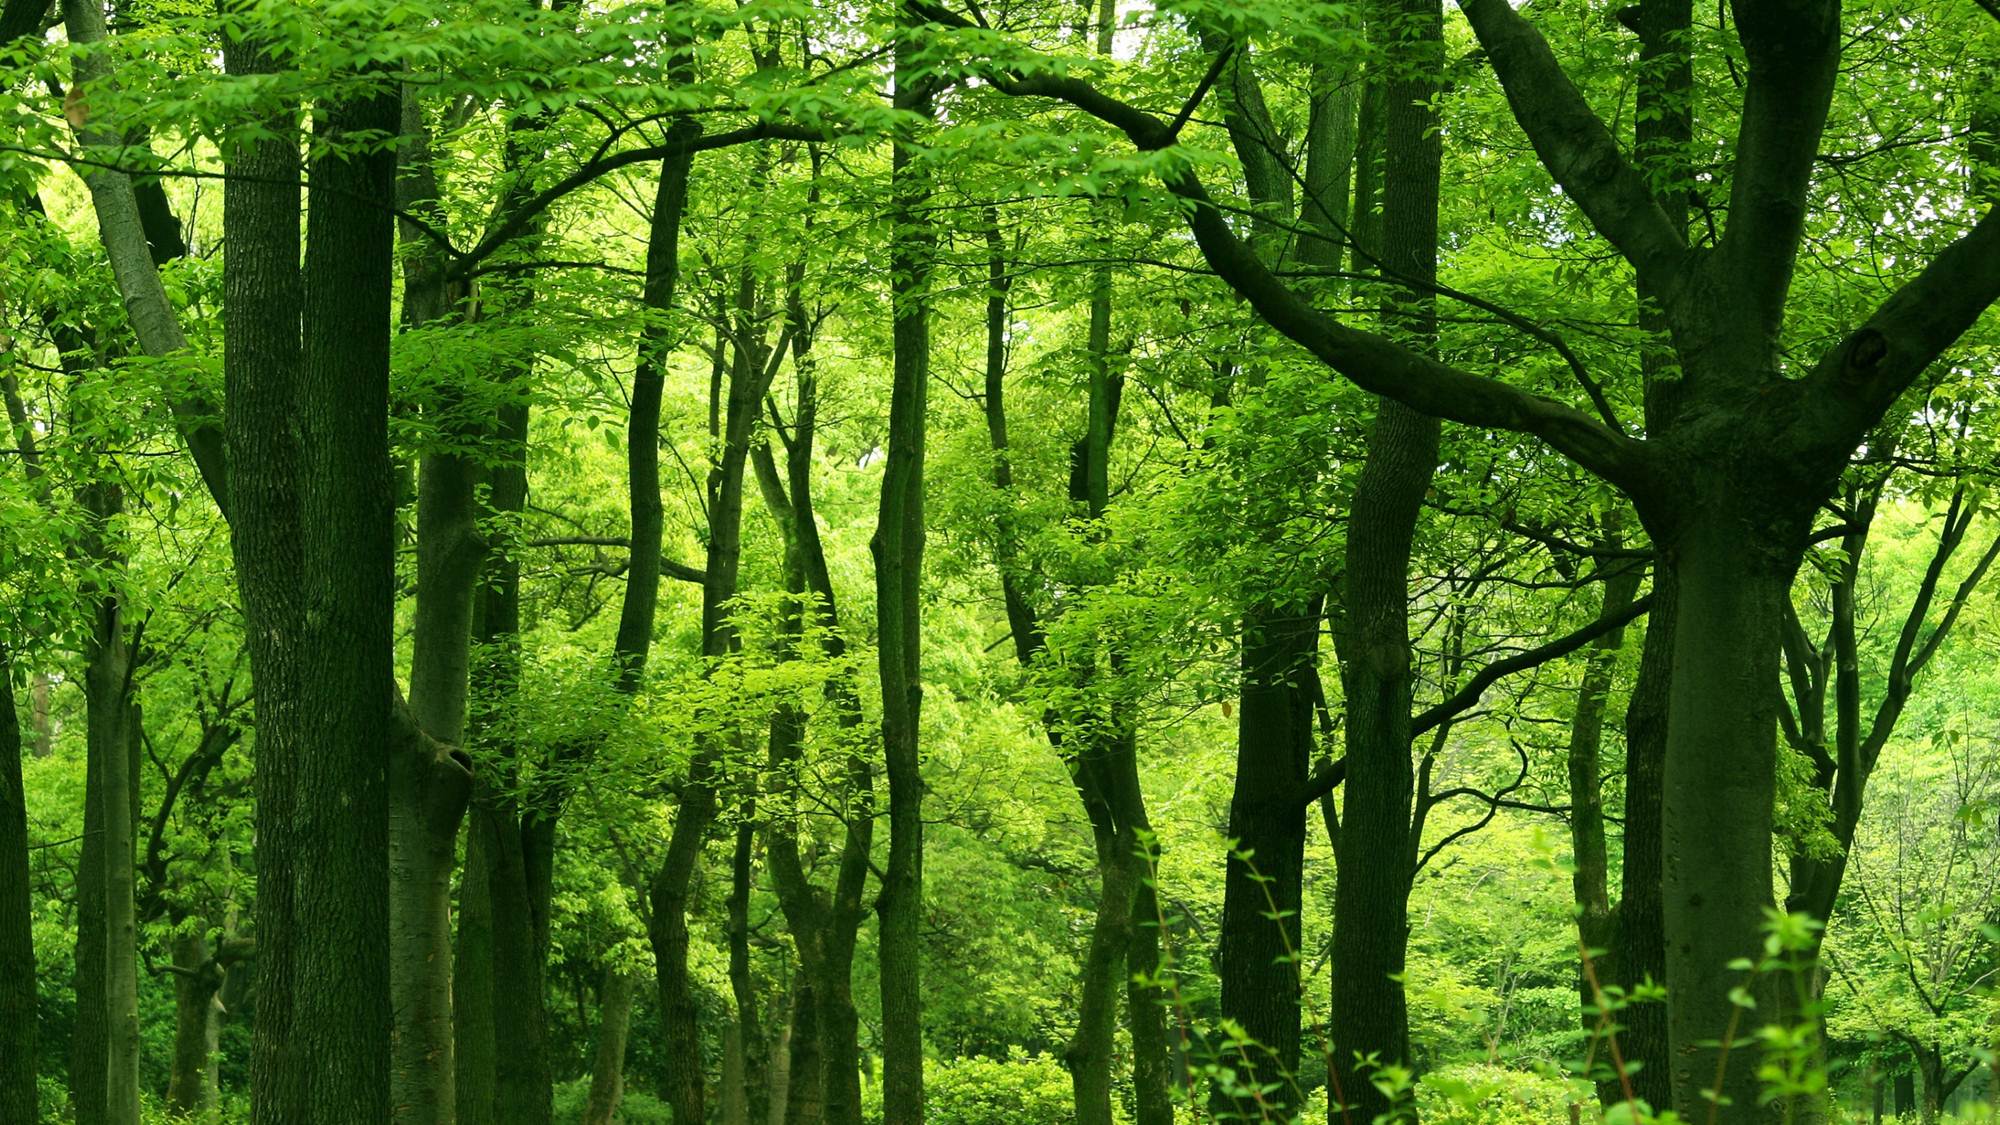 三张绿色森林幻灯片PPT模板素材免费下载